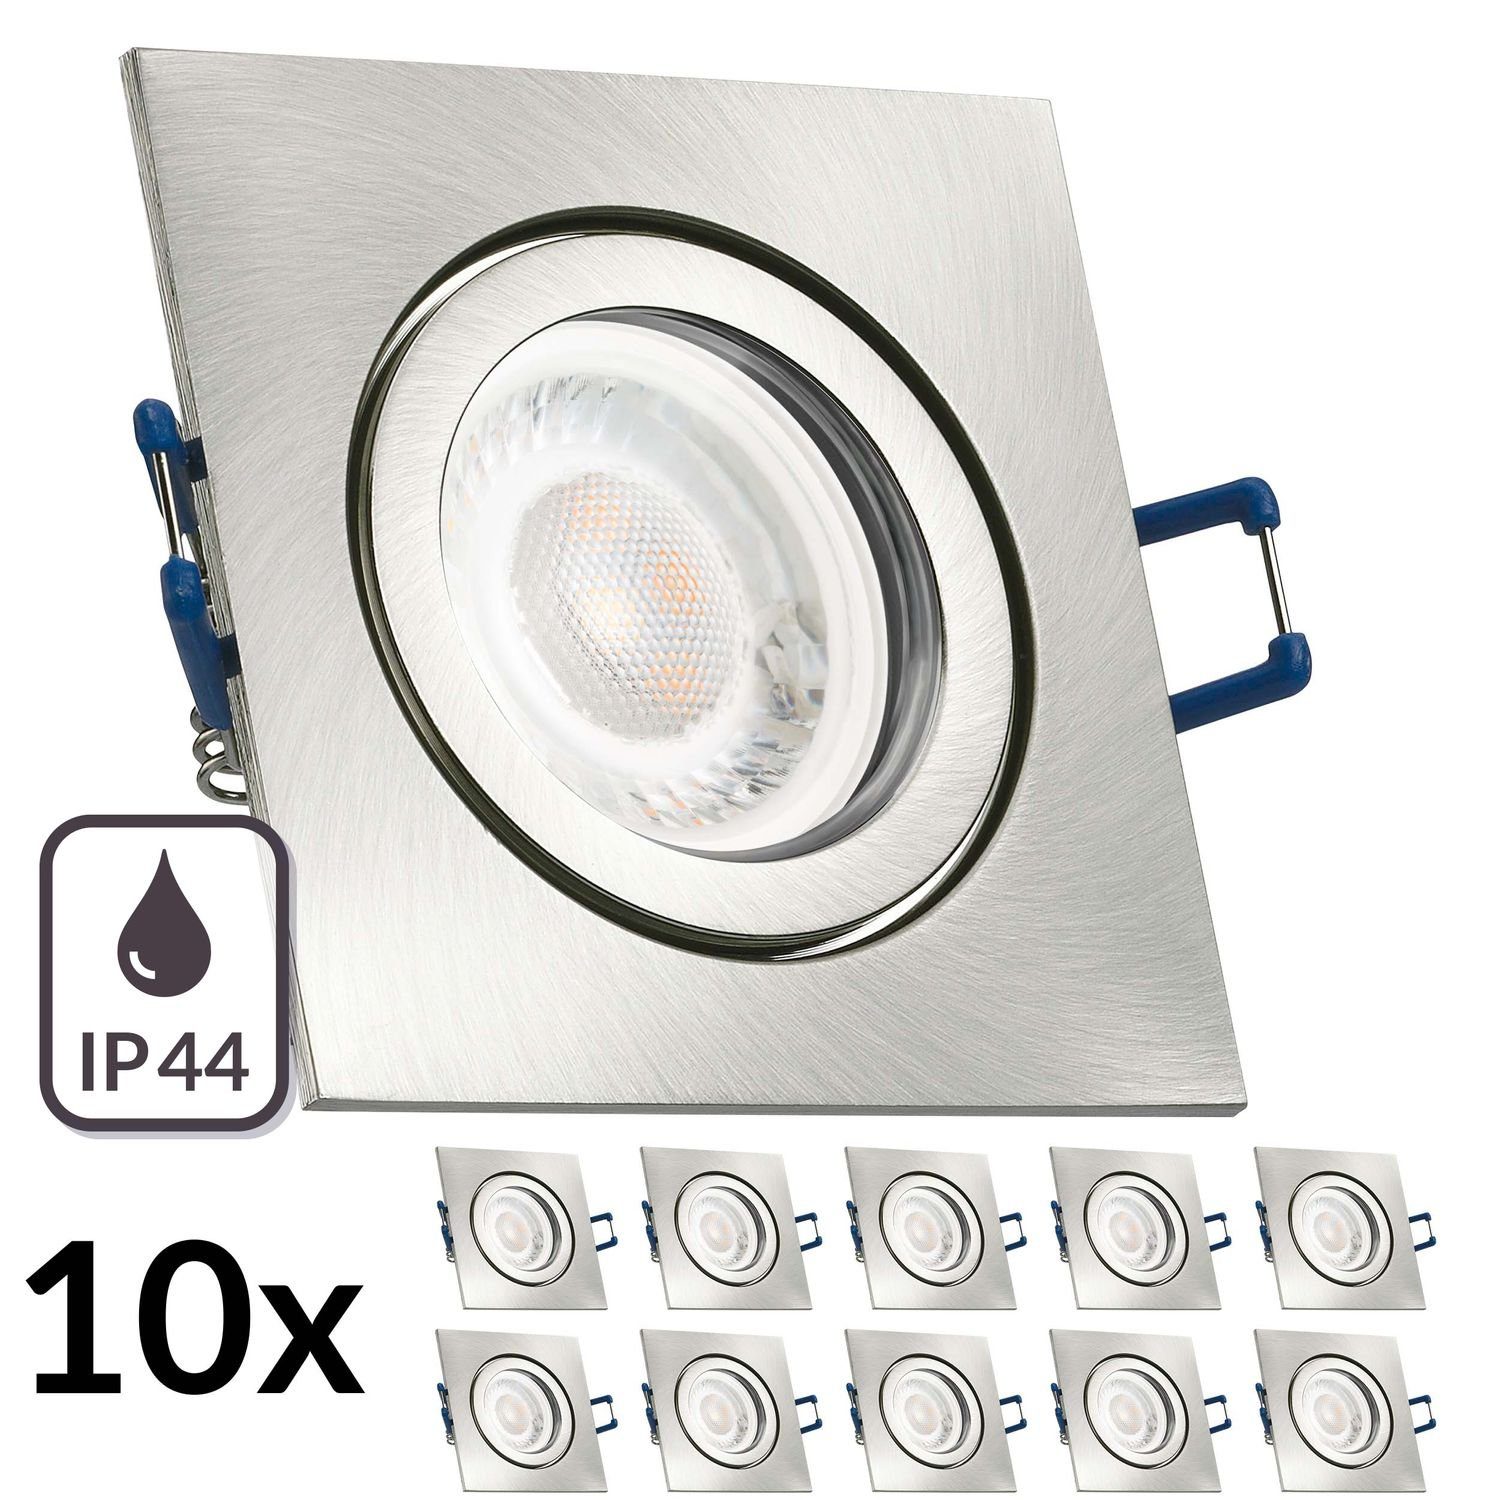 LEDANDO LED Einbaustrahler 10er IP44 LED Einbaustrahler Set extra flach in edelstahl / silber geb